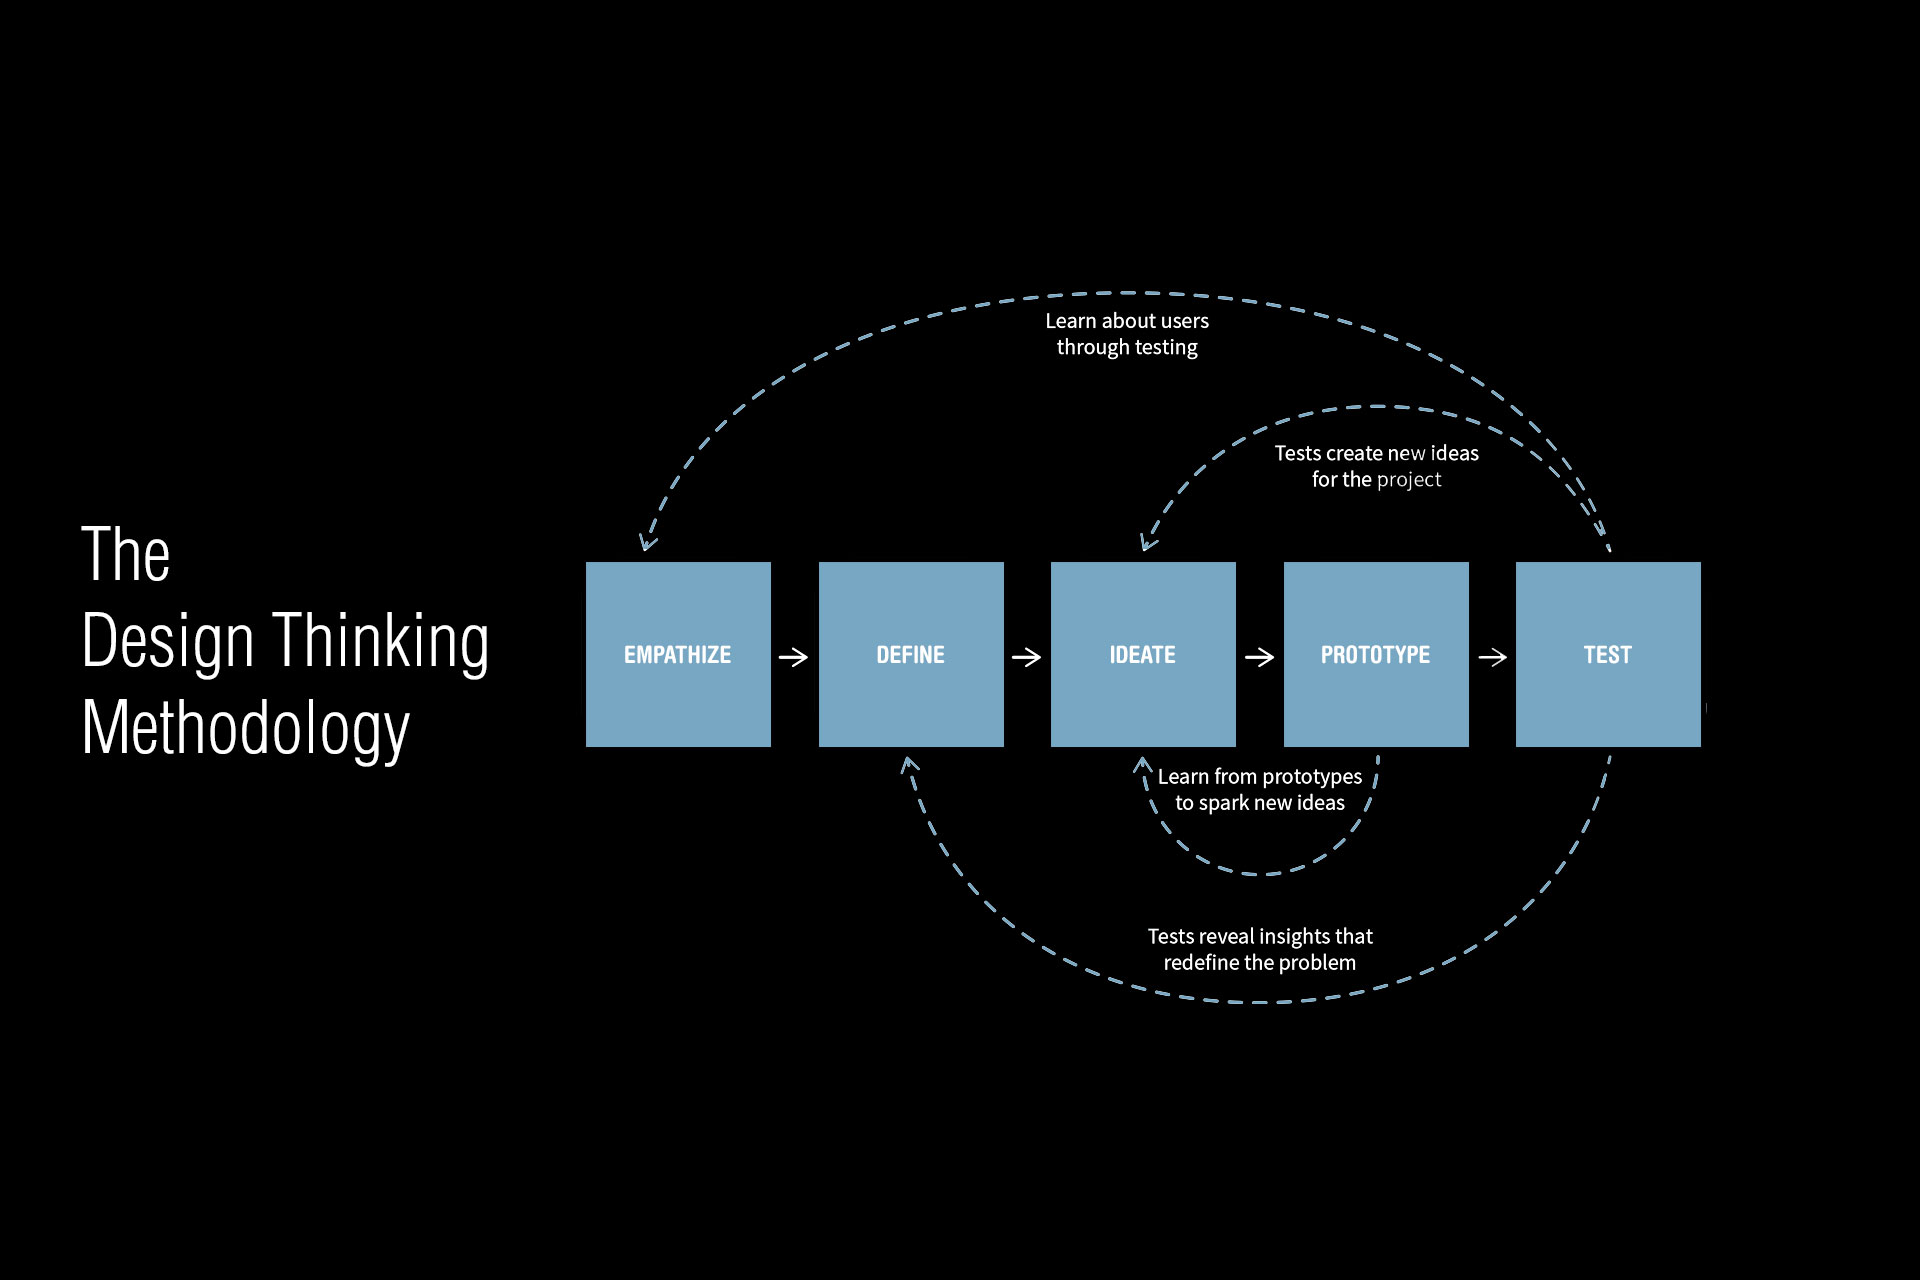 Design Thinking Methodology